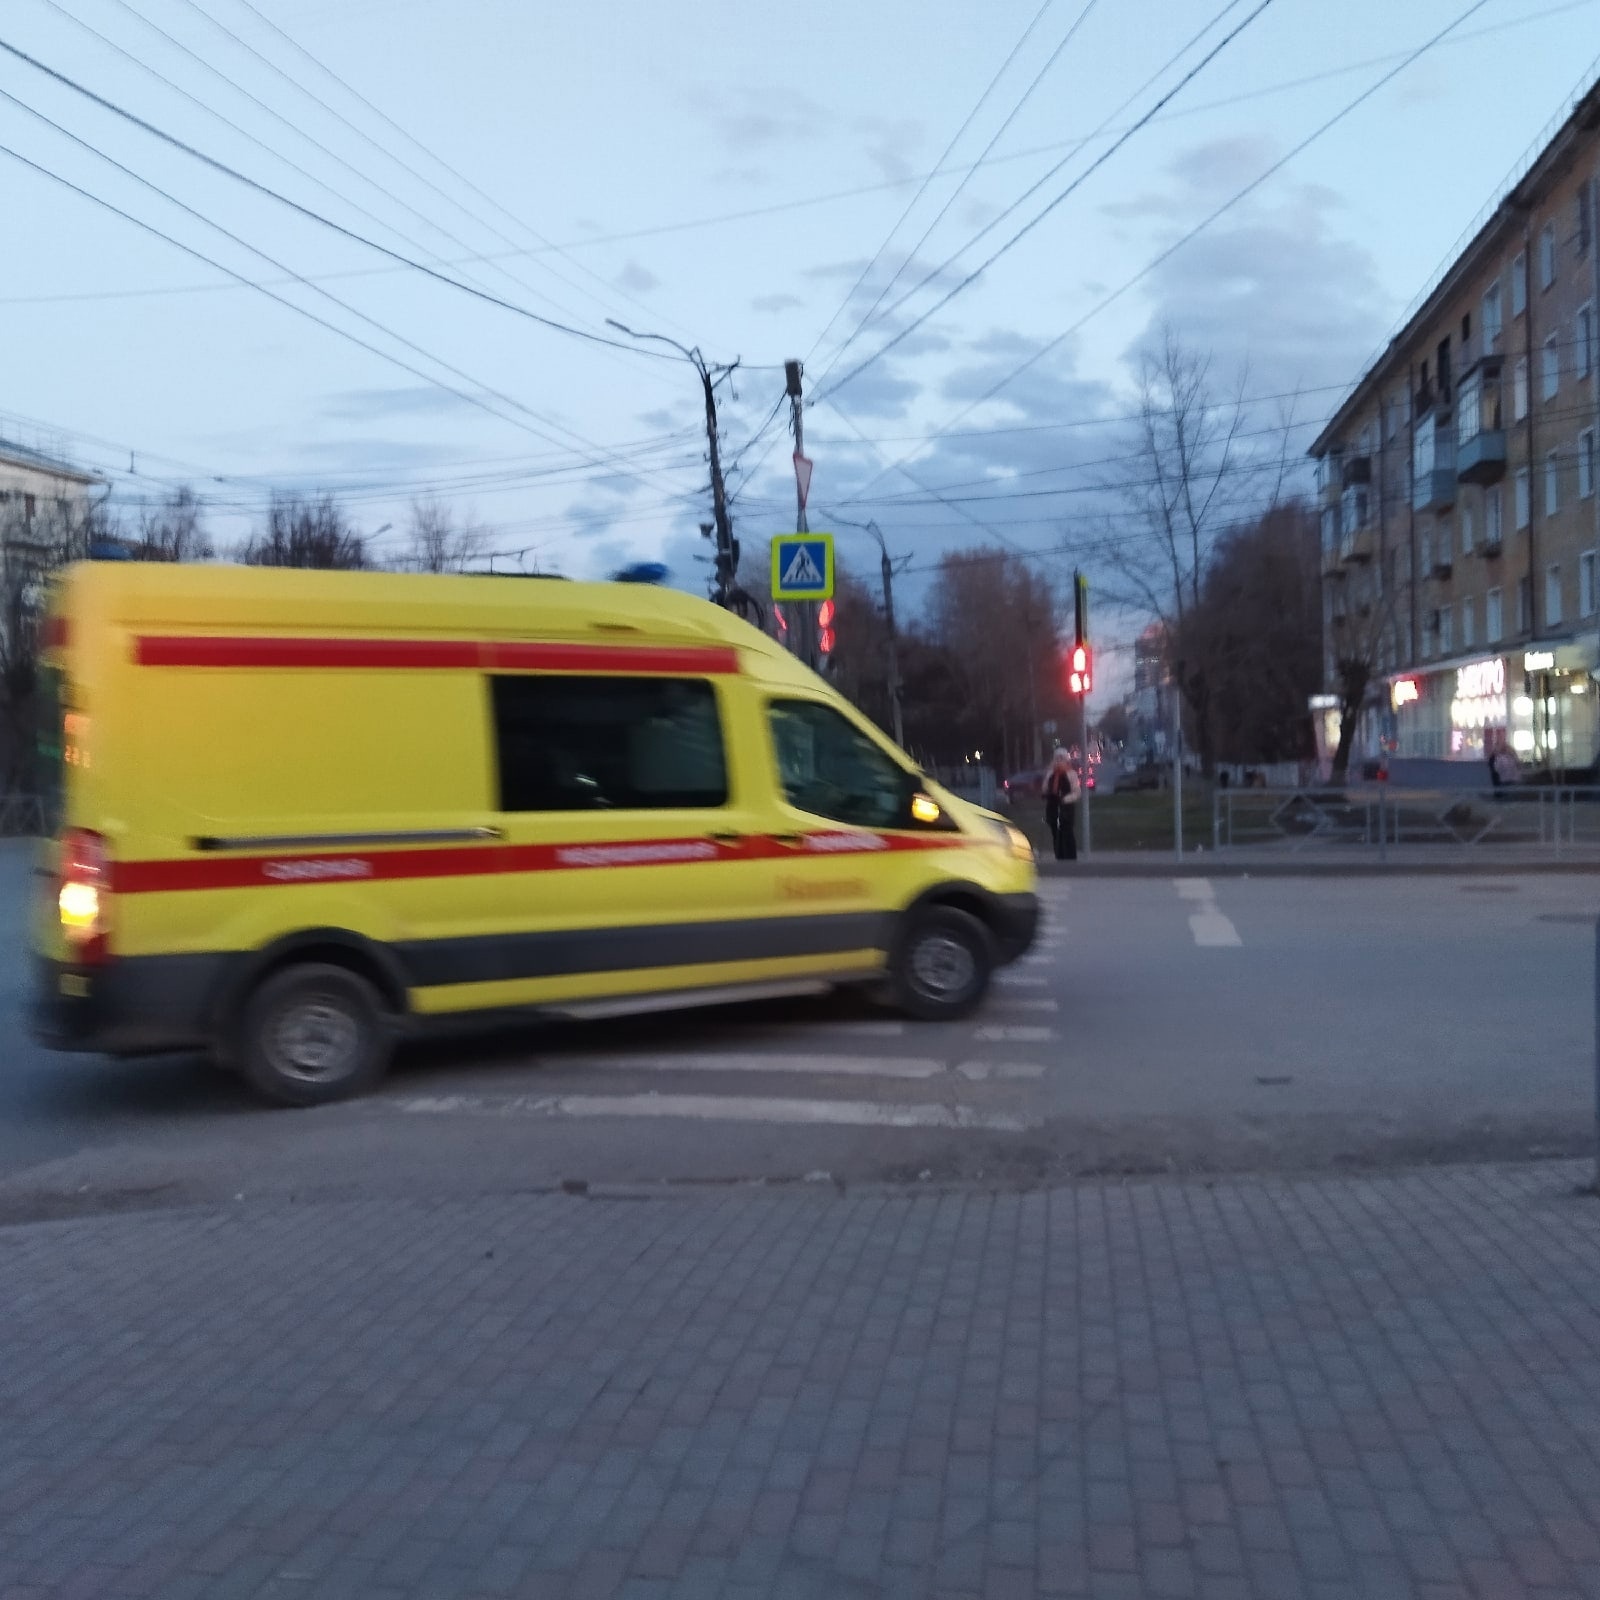 В Кирове на улице Комсомольской в подъезде нашли жестоко избитую пенсионерку